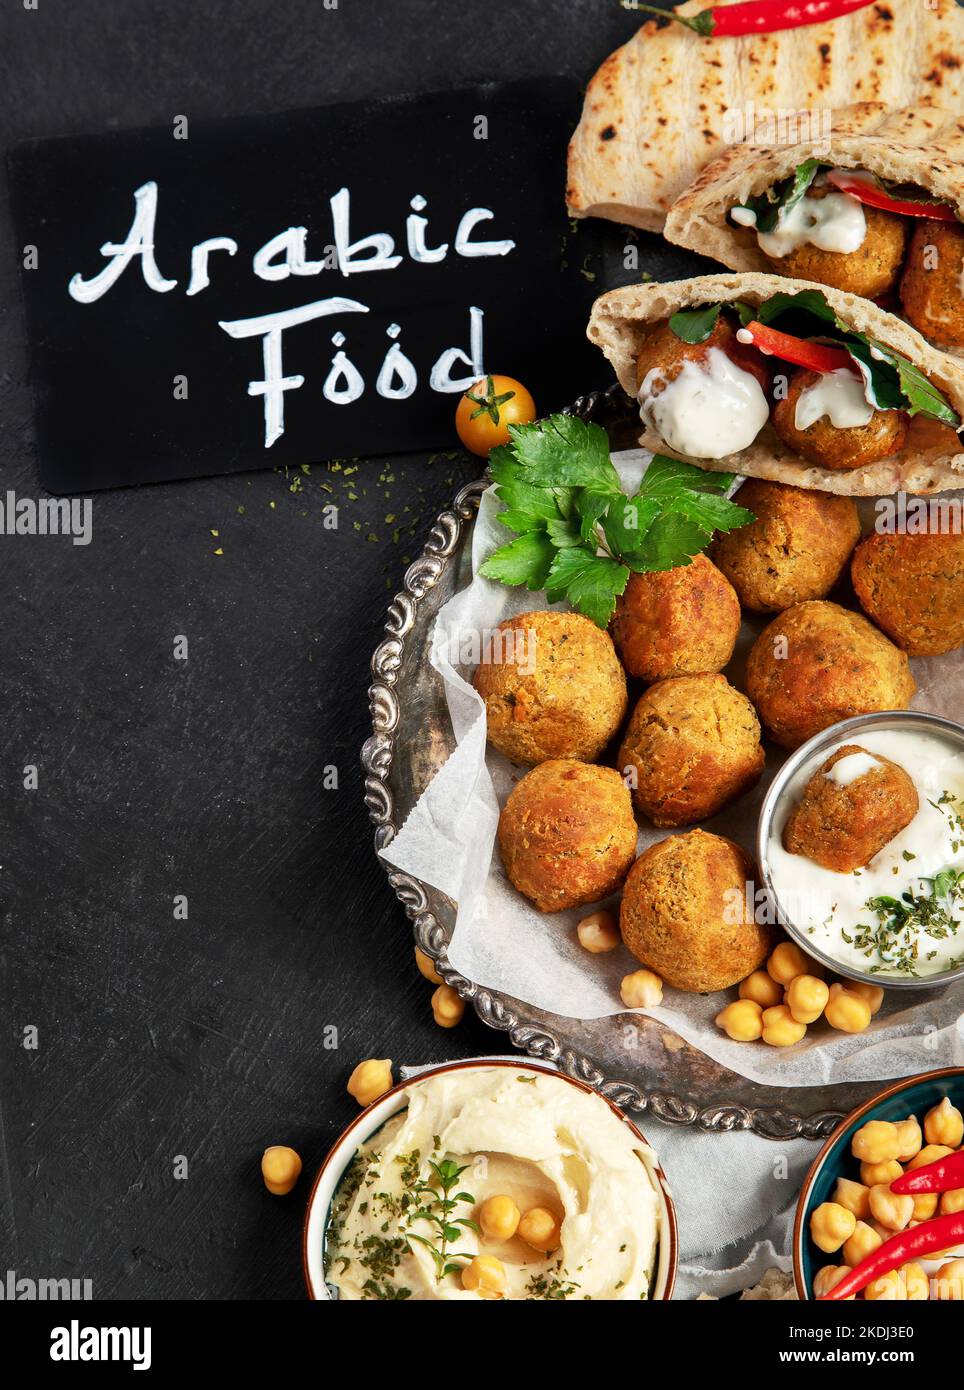 Nahöstliche, arabische Gerichte mit Falafel, Hummus, Pita. Halal-Essen. Libanesische Küche. Draufsicht Stockfoto